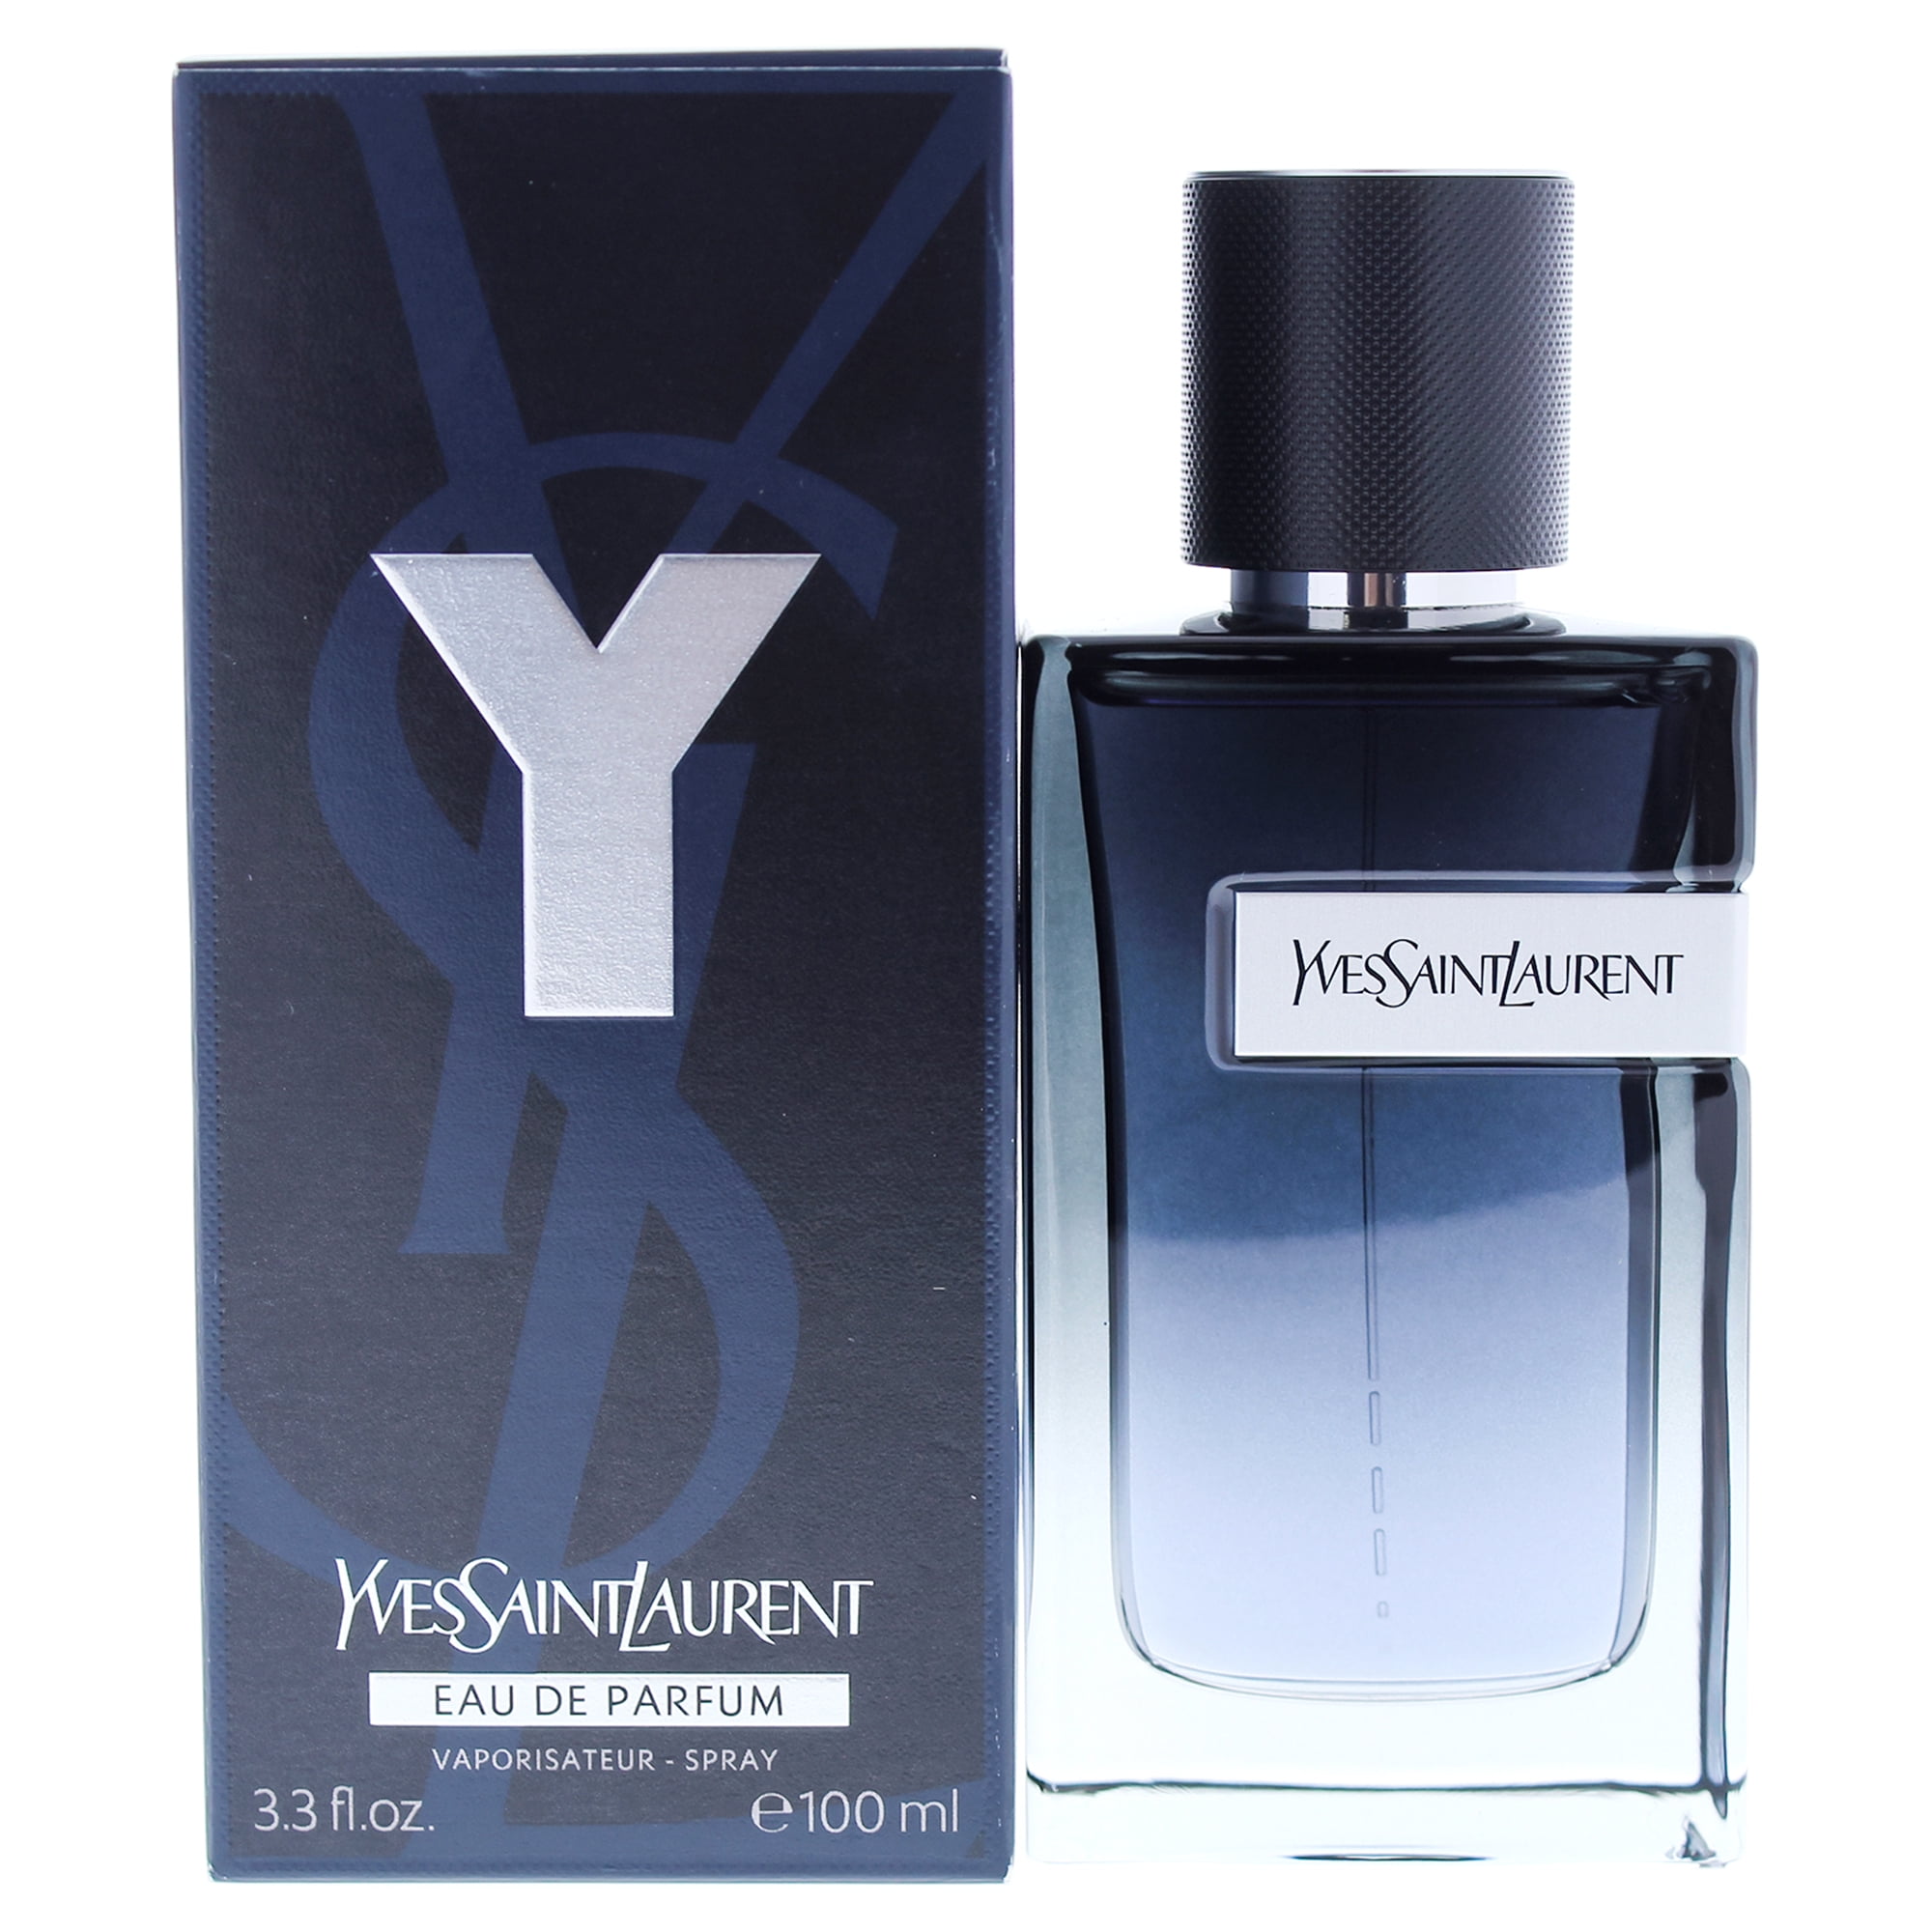 Yves Saint Laurent Y Eau de Toilette, Perfume for Women, 3.3 Oz